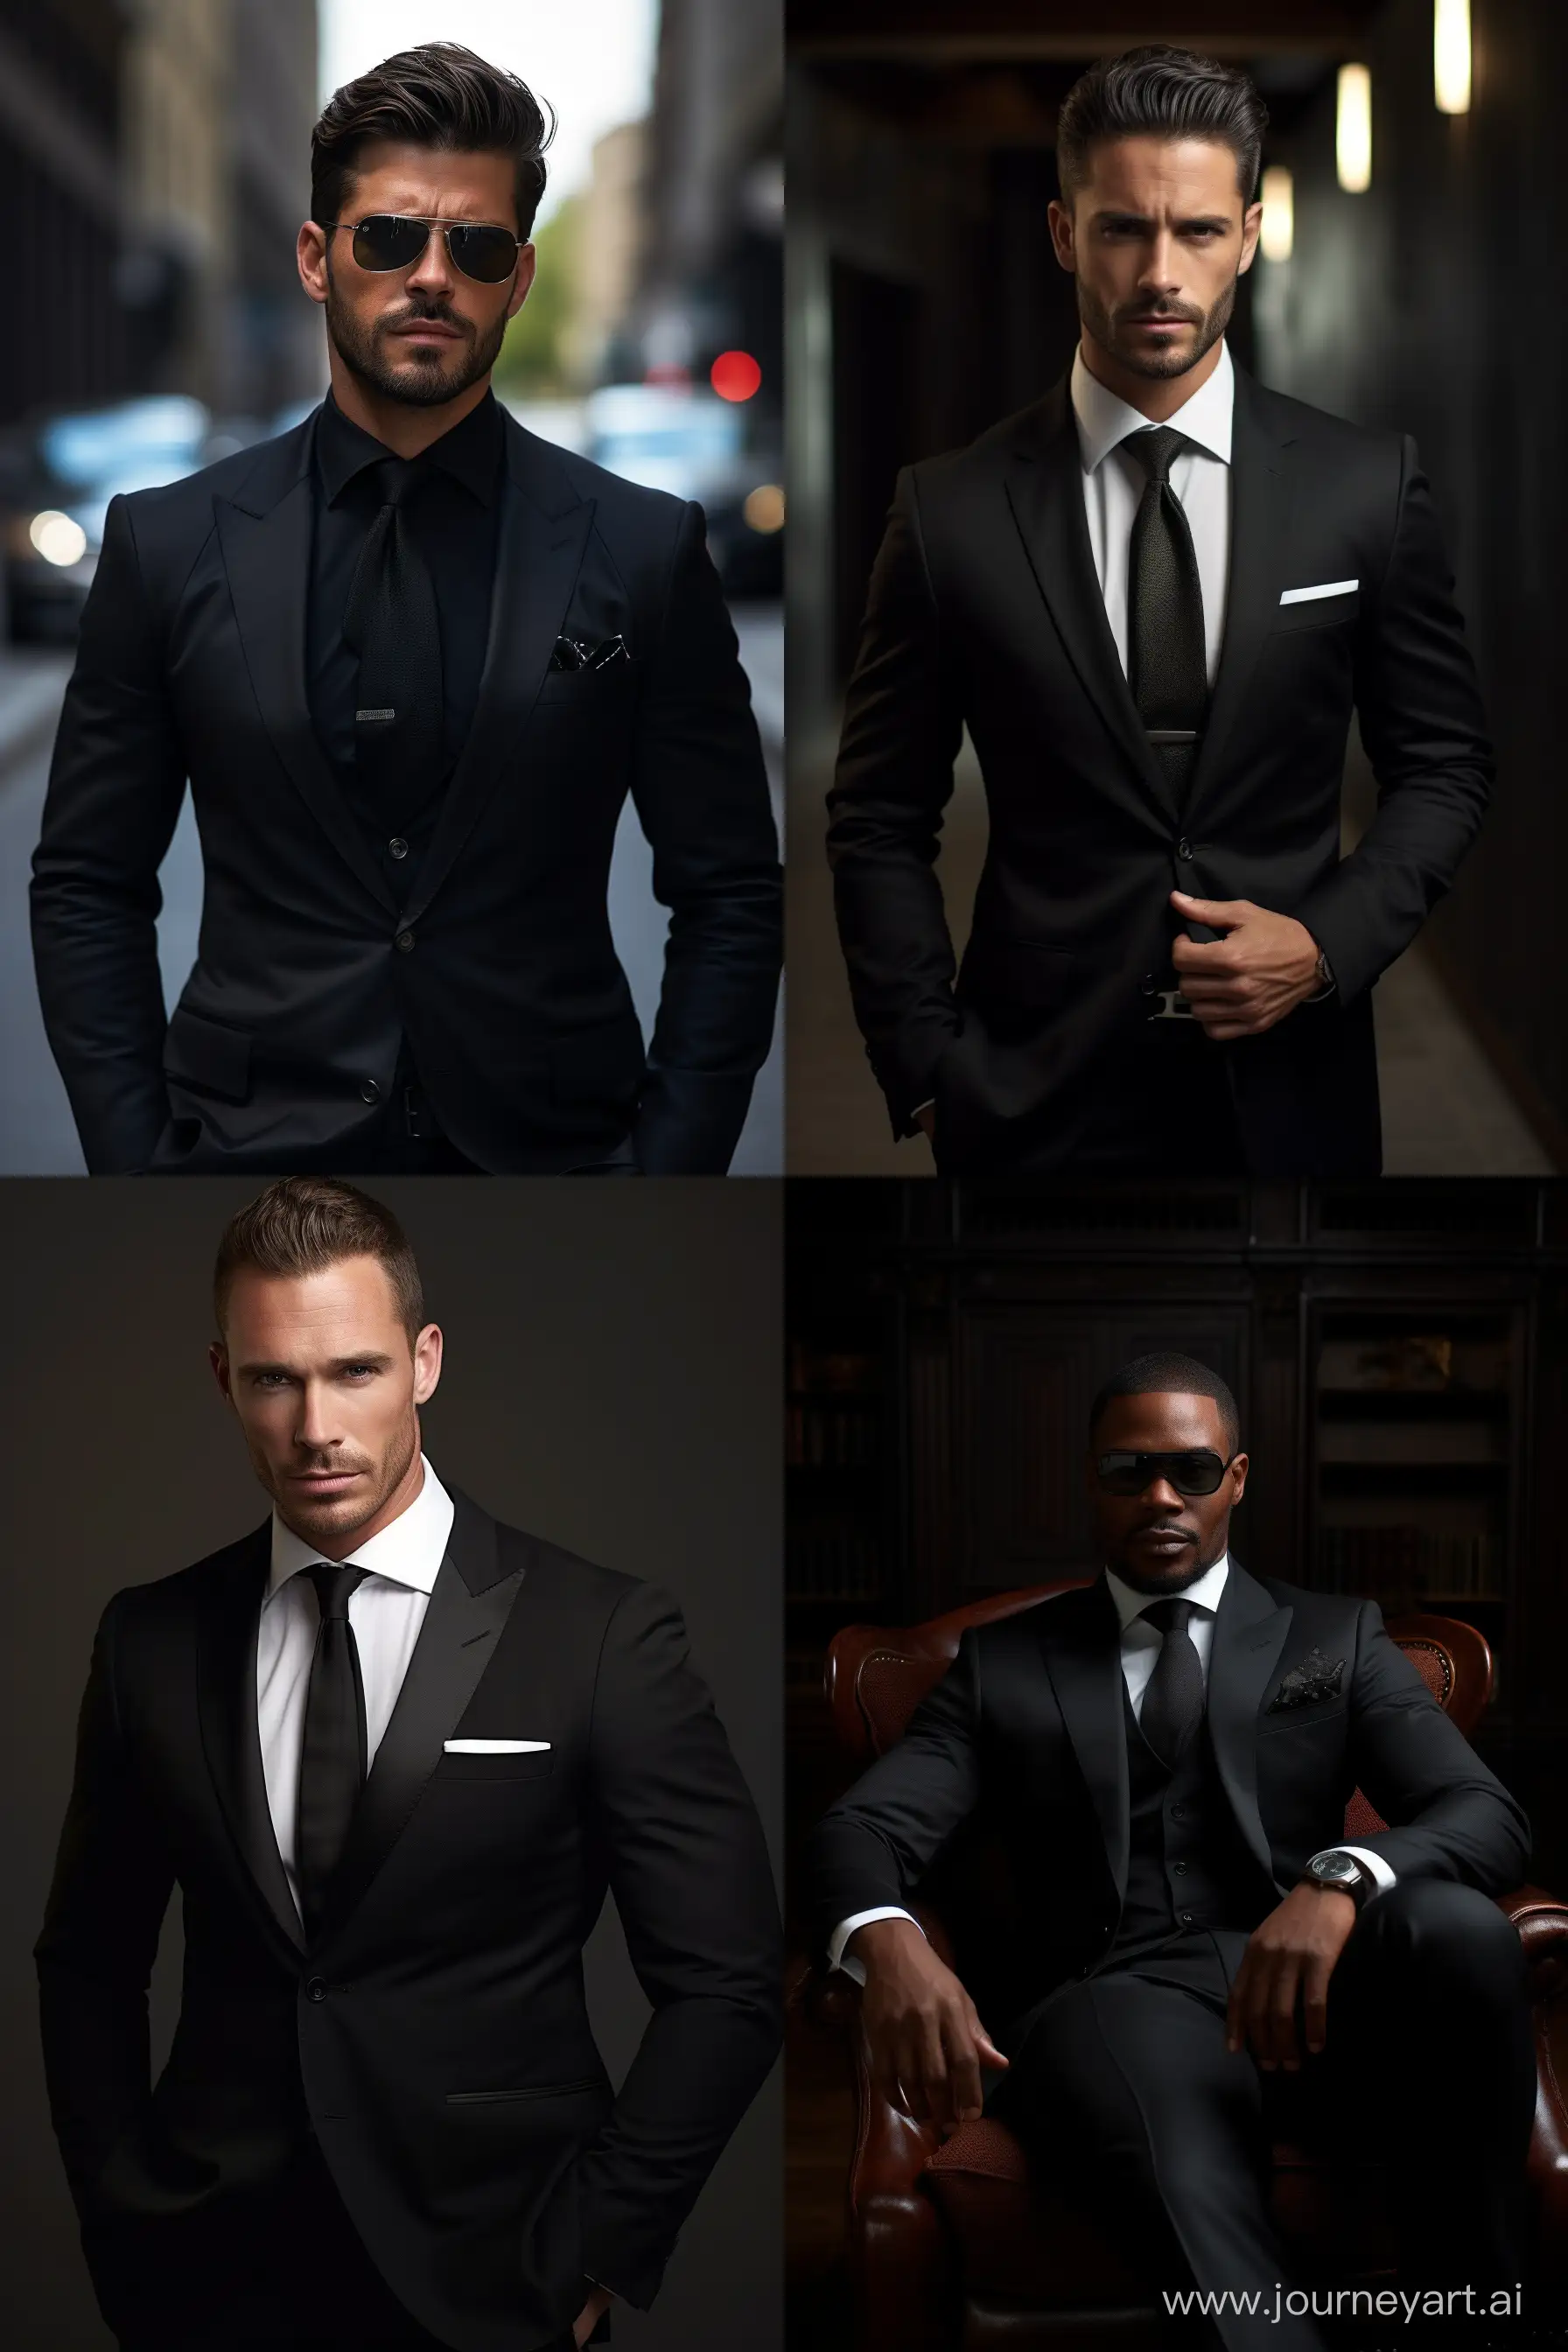 Timeless-Elegance-A-Striking-Black-Suit-in-Dimly-Lit-Grandeur